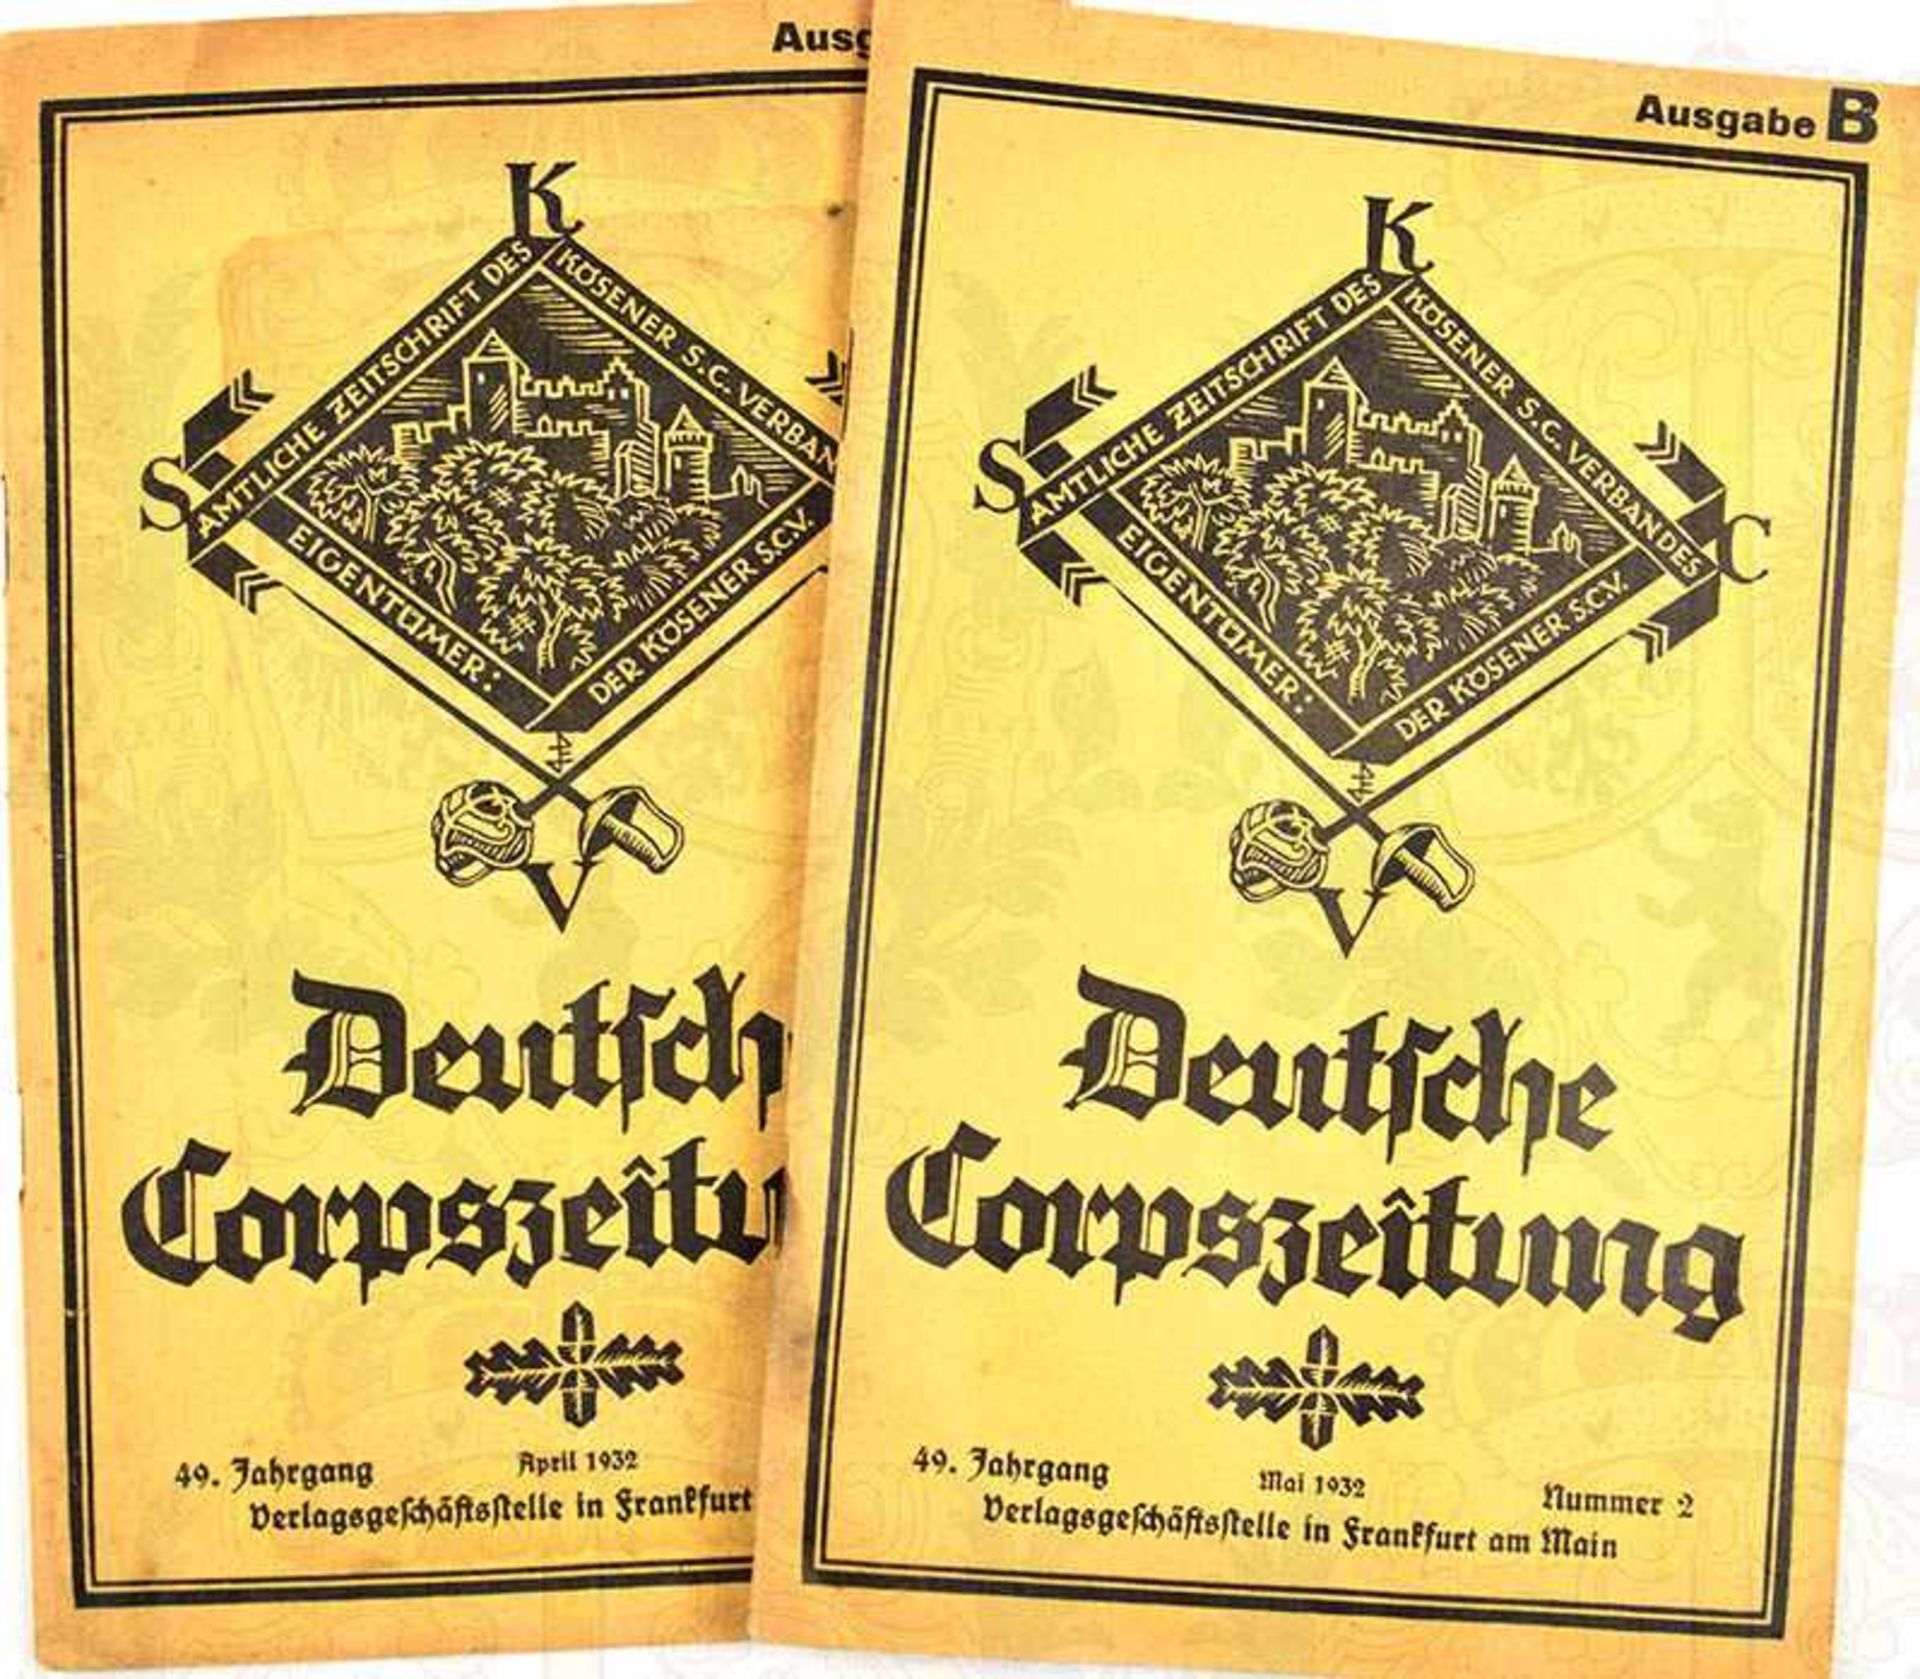 DEUTSCHE CORPSZEITUNG, 2 Ausgaben (Ausg. B), April u. Mai 1932, Frankfurt a. M., Abb., ges. 92 S.,